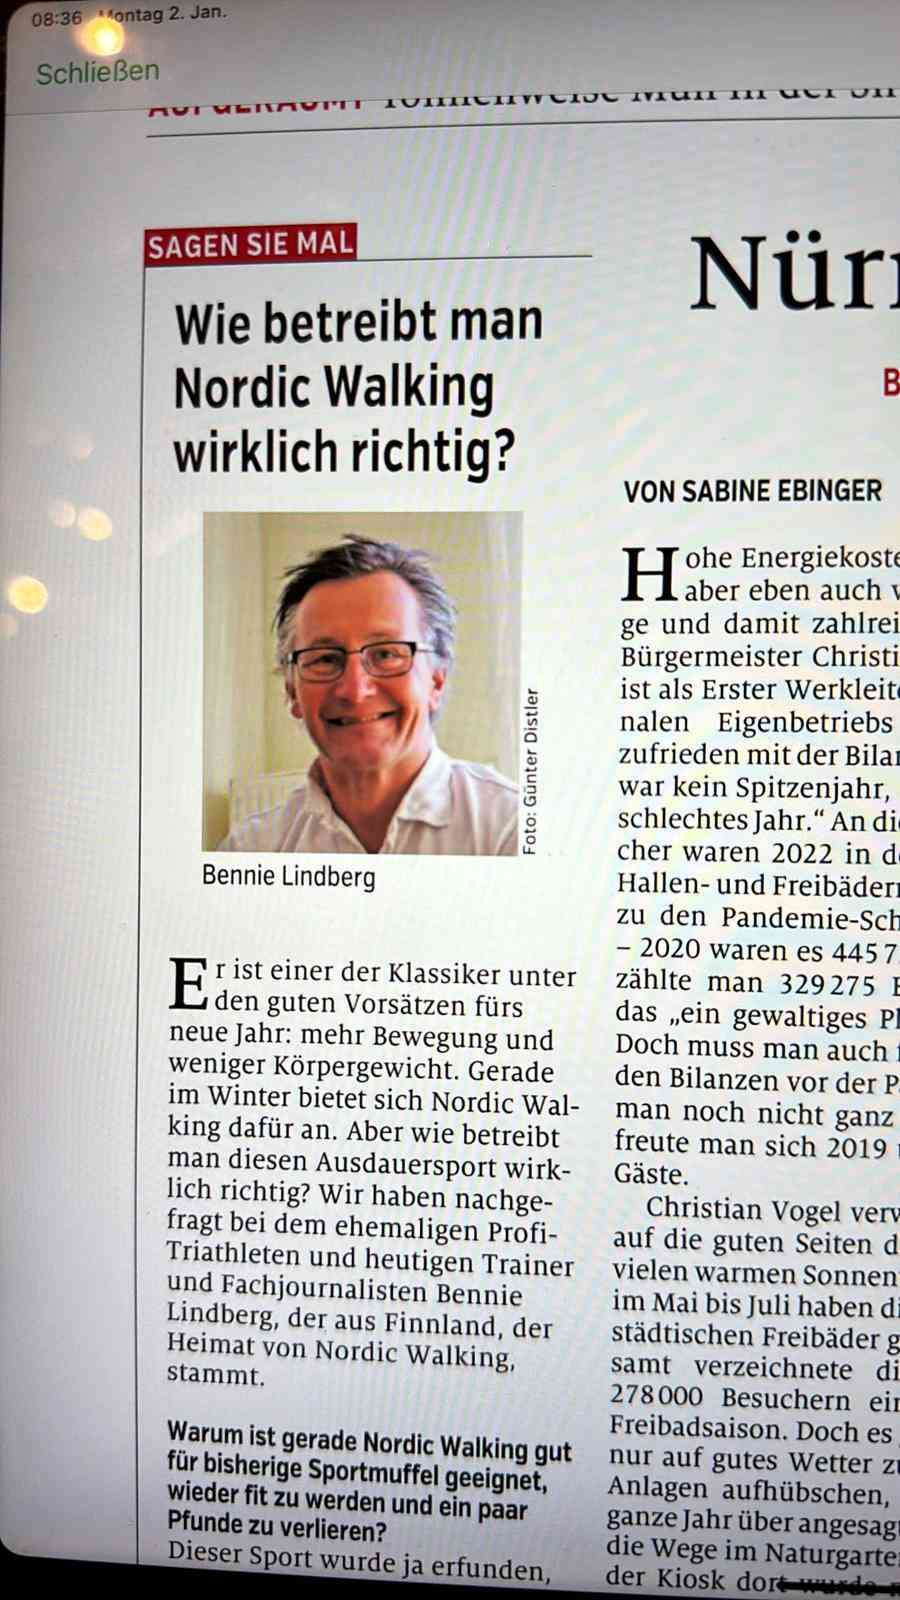 Interviuw Bennie Lindberg in den Nürnberger Nachrichten